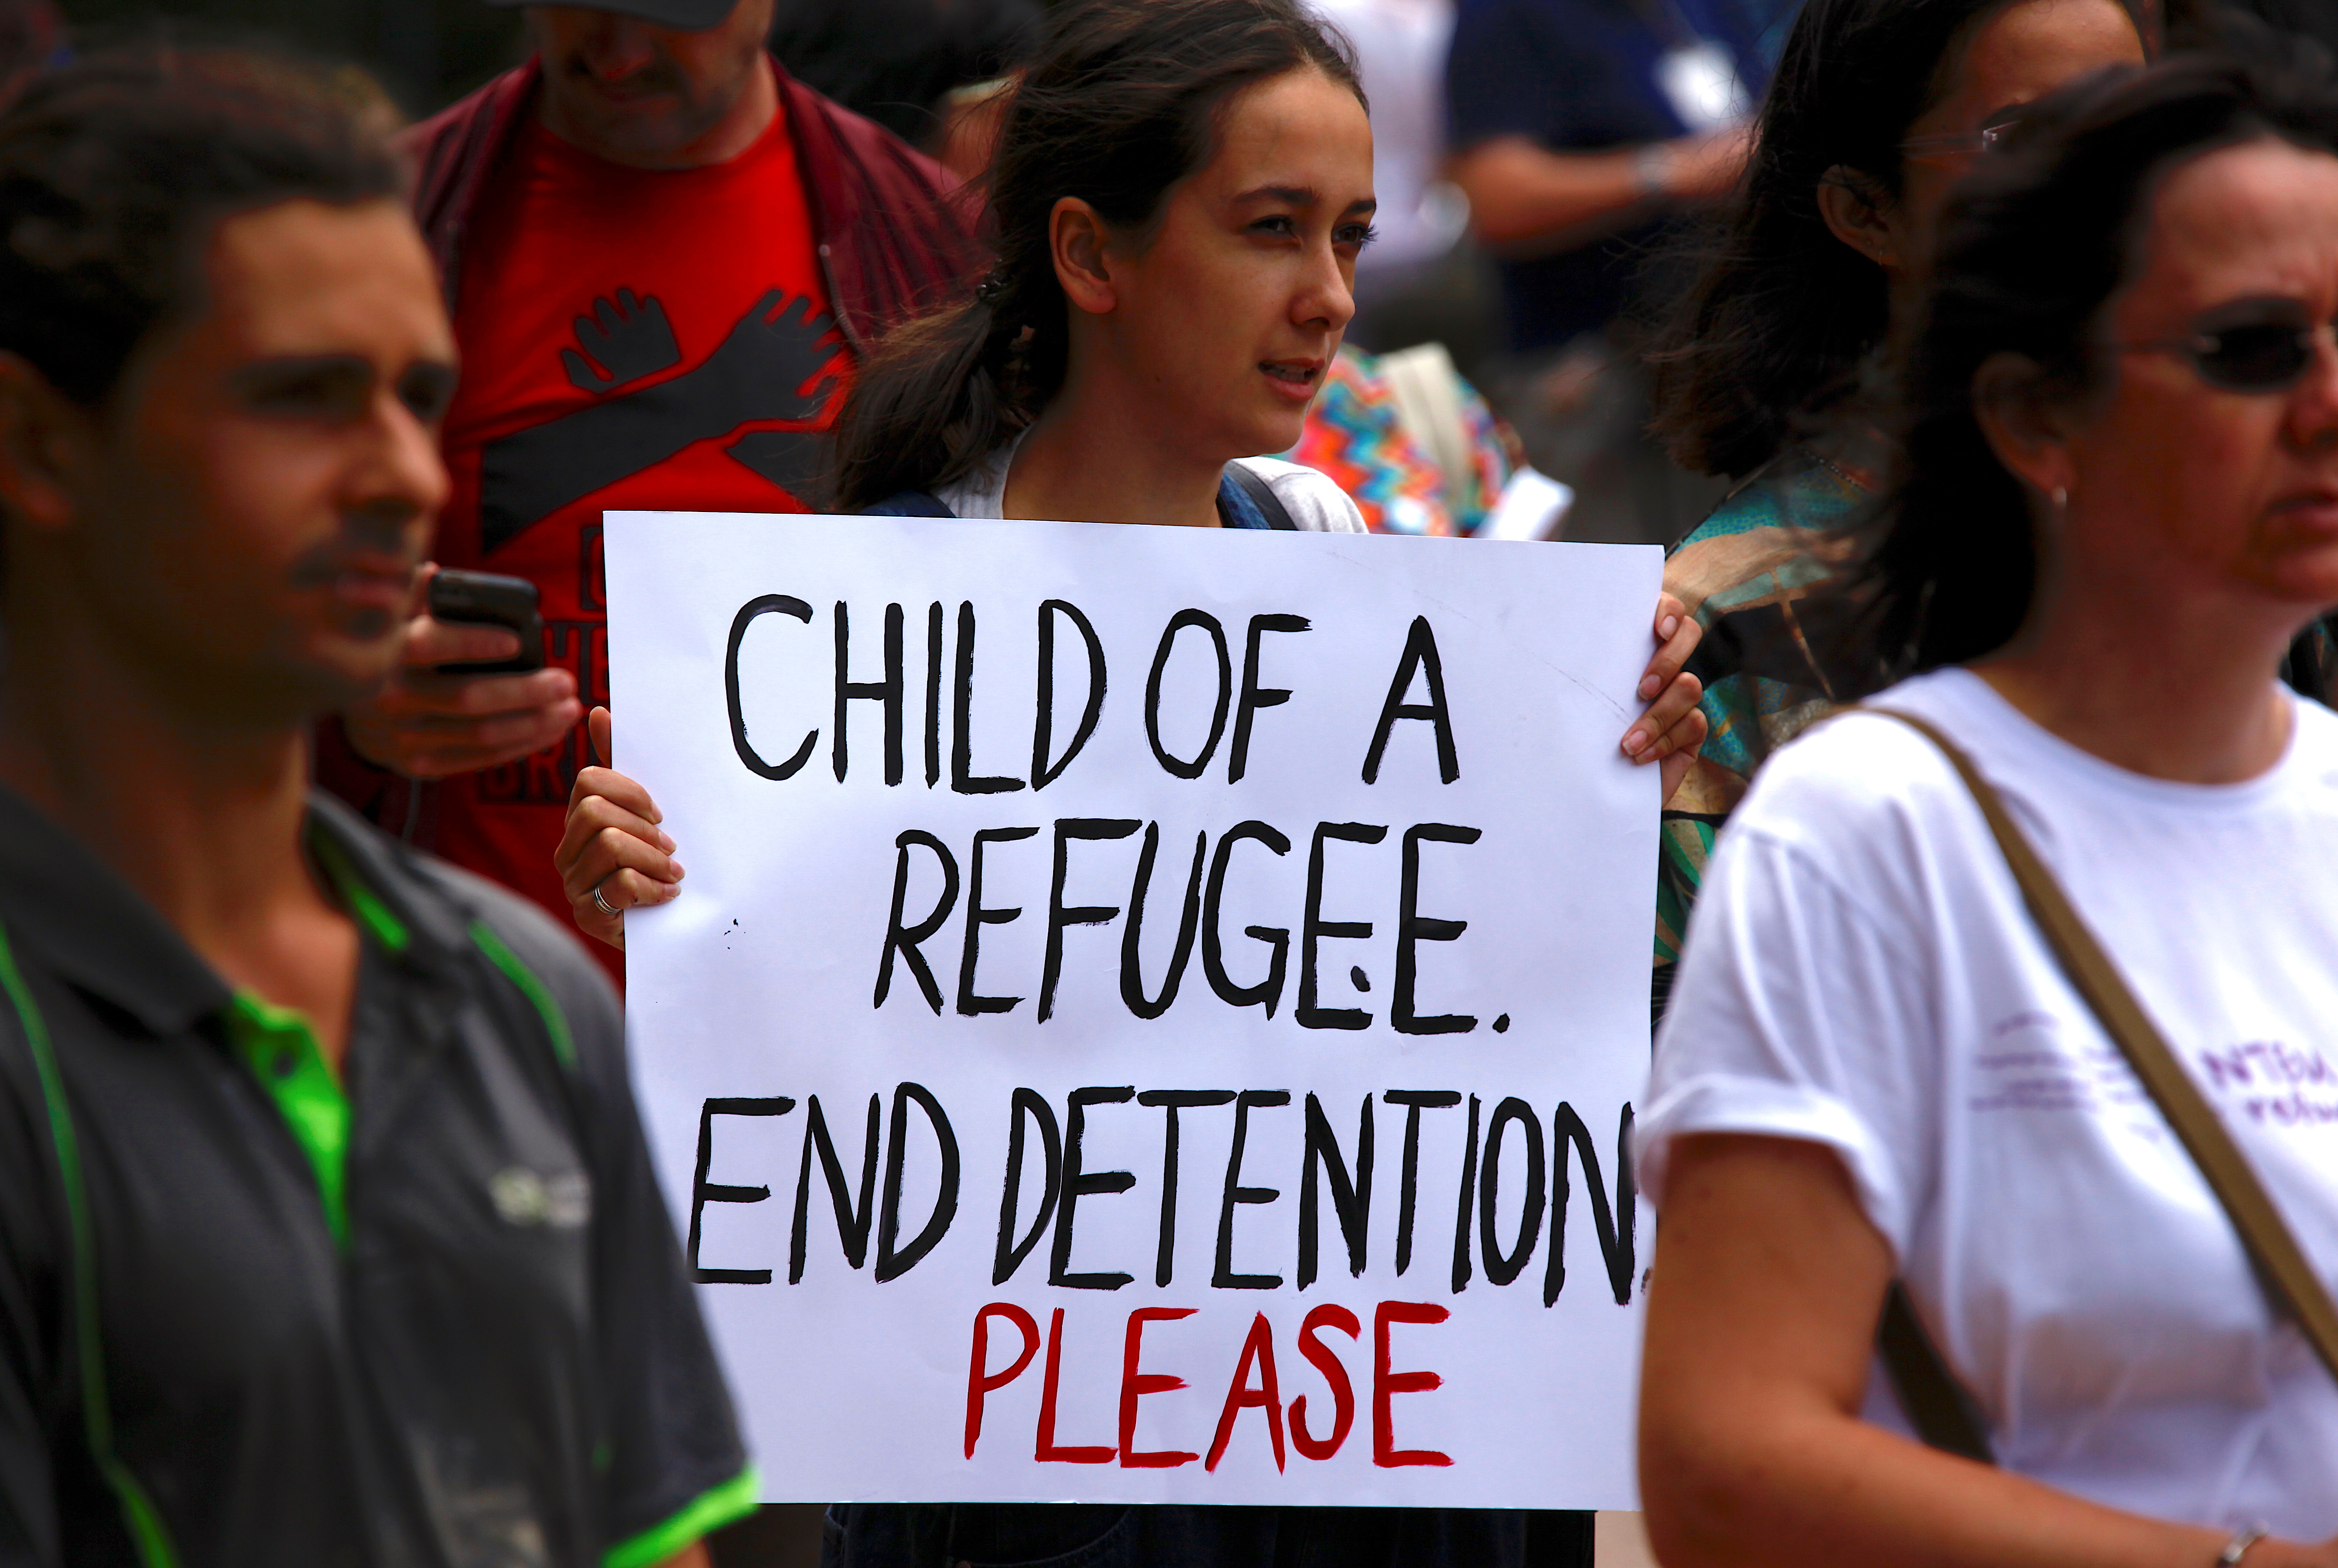 لافتات ضد المعاملة السيئة للاجئين